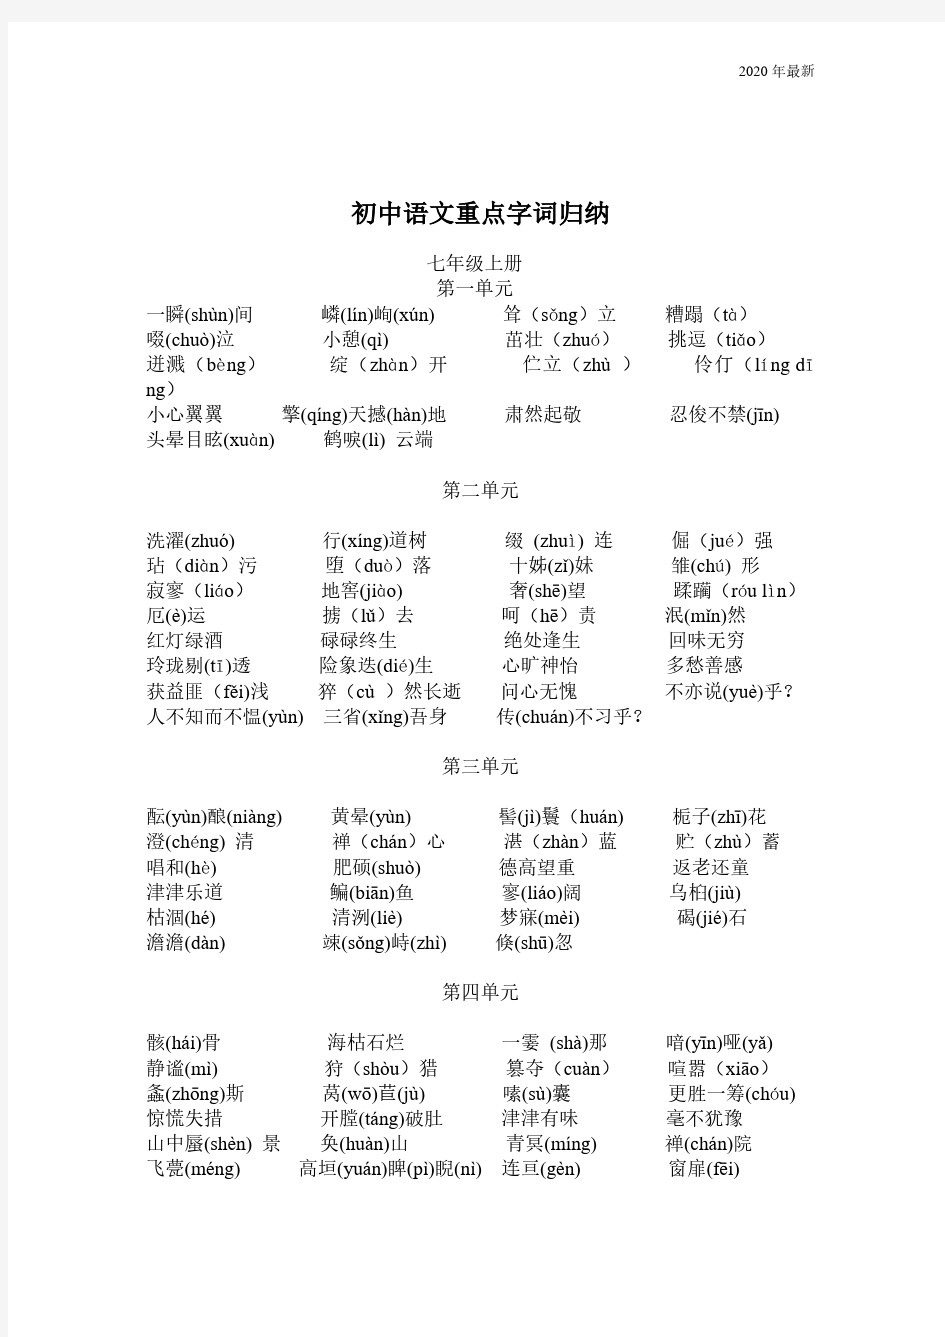 2020年最新人教版初中语文重点字词归纳